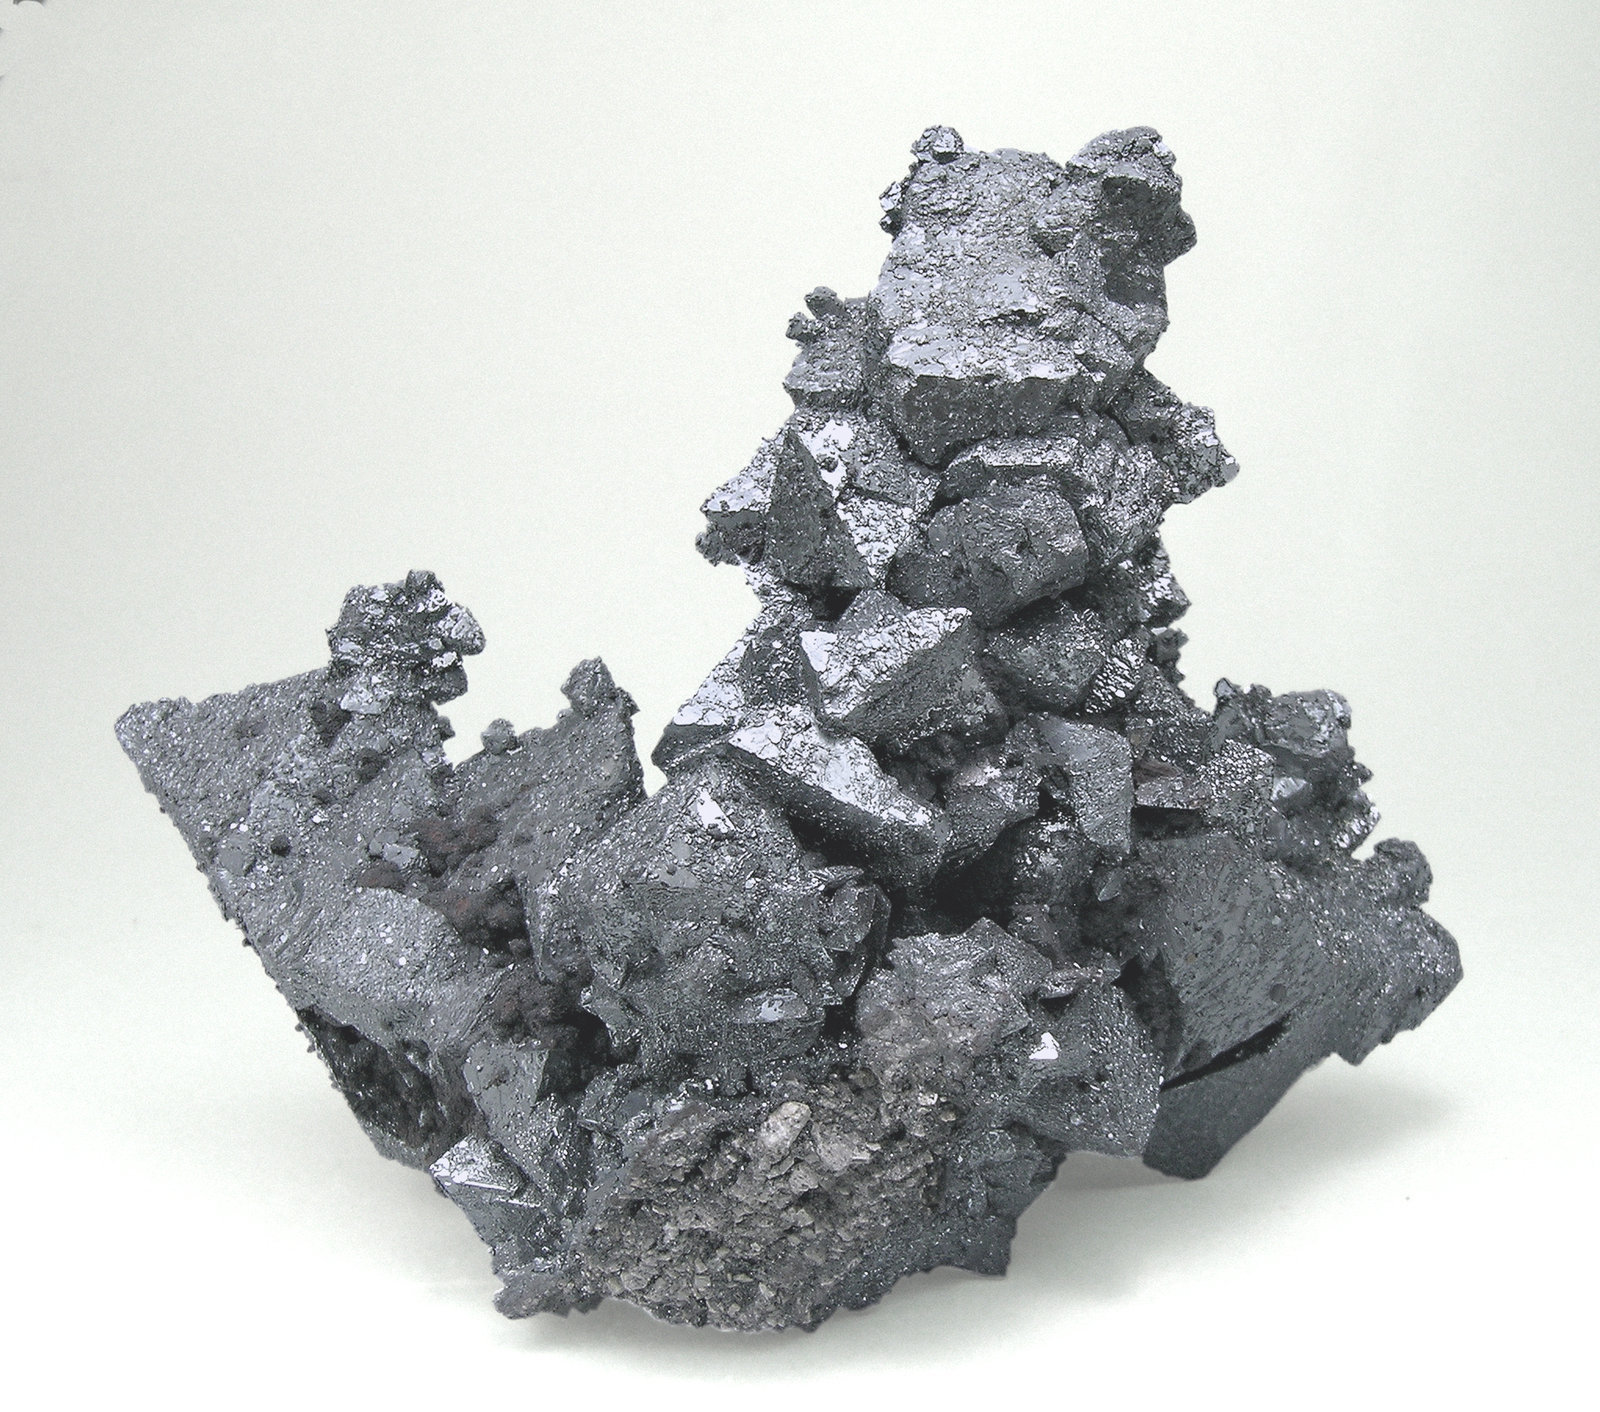 specimens/s_imagesM5/Hematite_Martite-ET96M5r.jpg